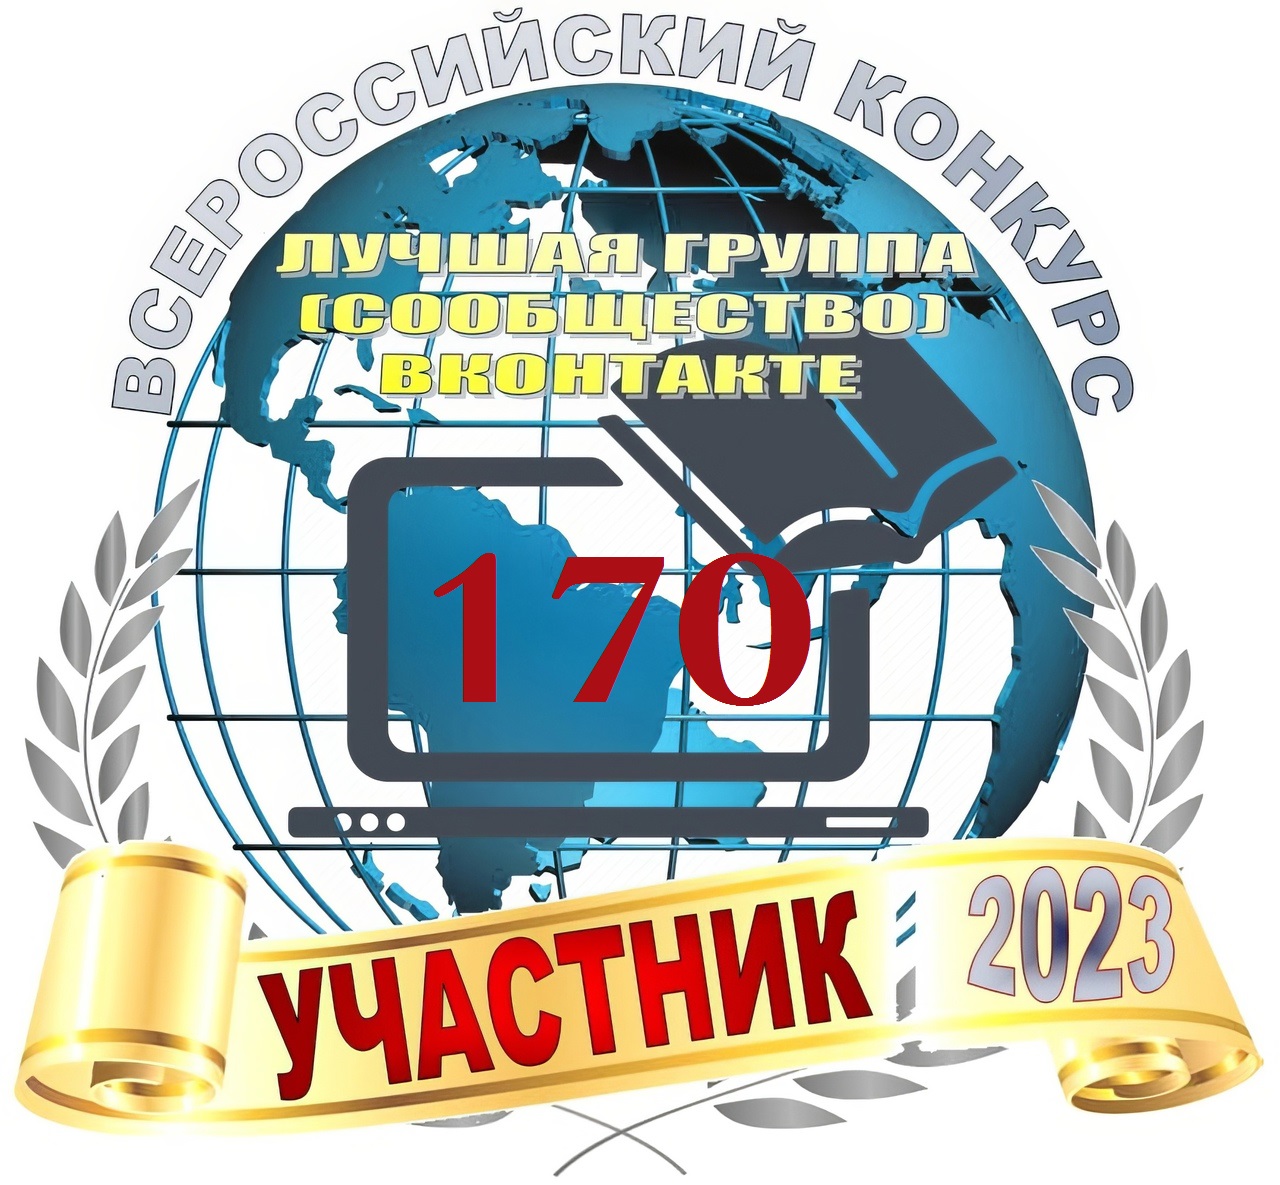 Всероссийский интерактивный конкурс среди групп (сообществ) социальной сети в &amp;quot;ВКонтакте&amp;quot; - &amp;quot;Лучшая группа (сообщество) в &amp;quot;ВКонтакте&amp;quot; 2023 год&amp;quot;.